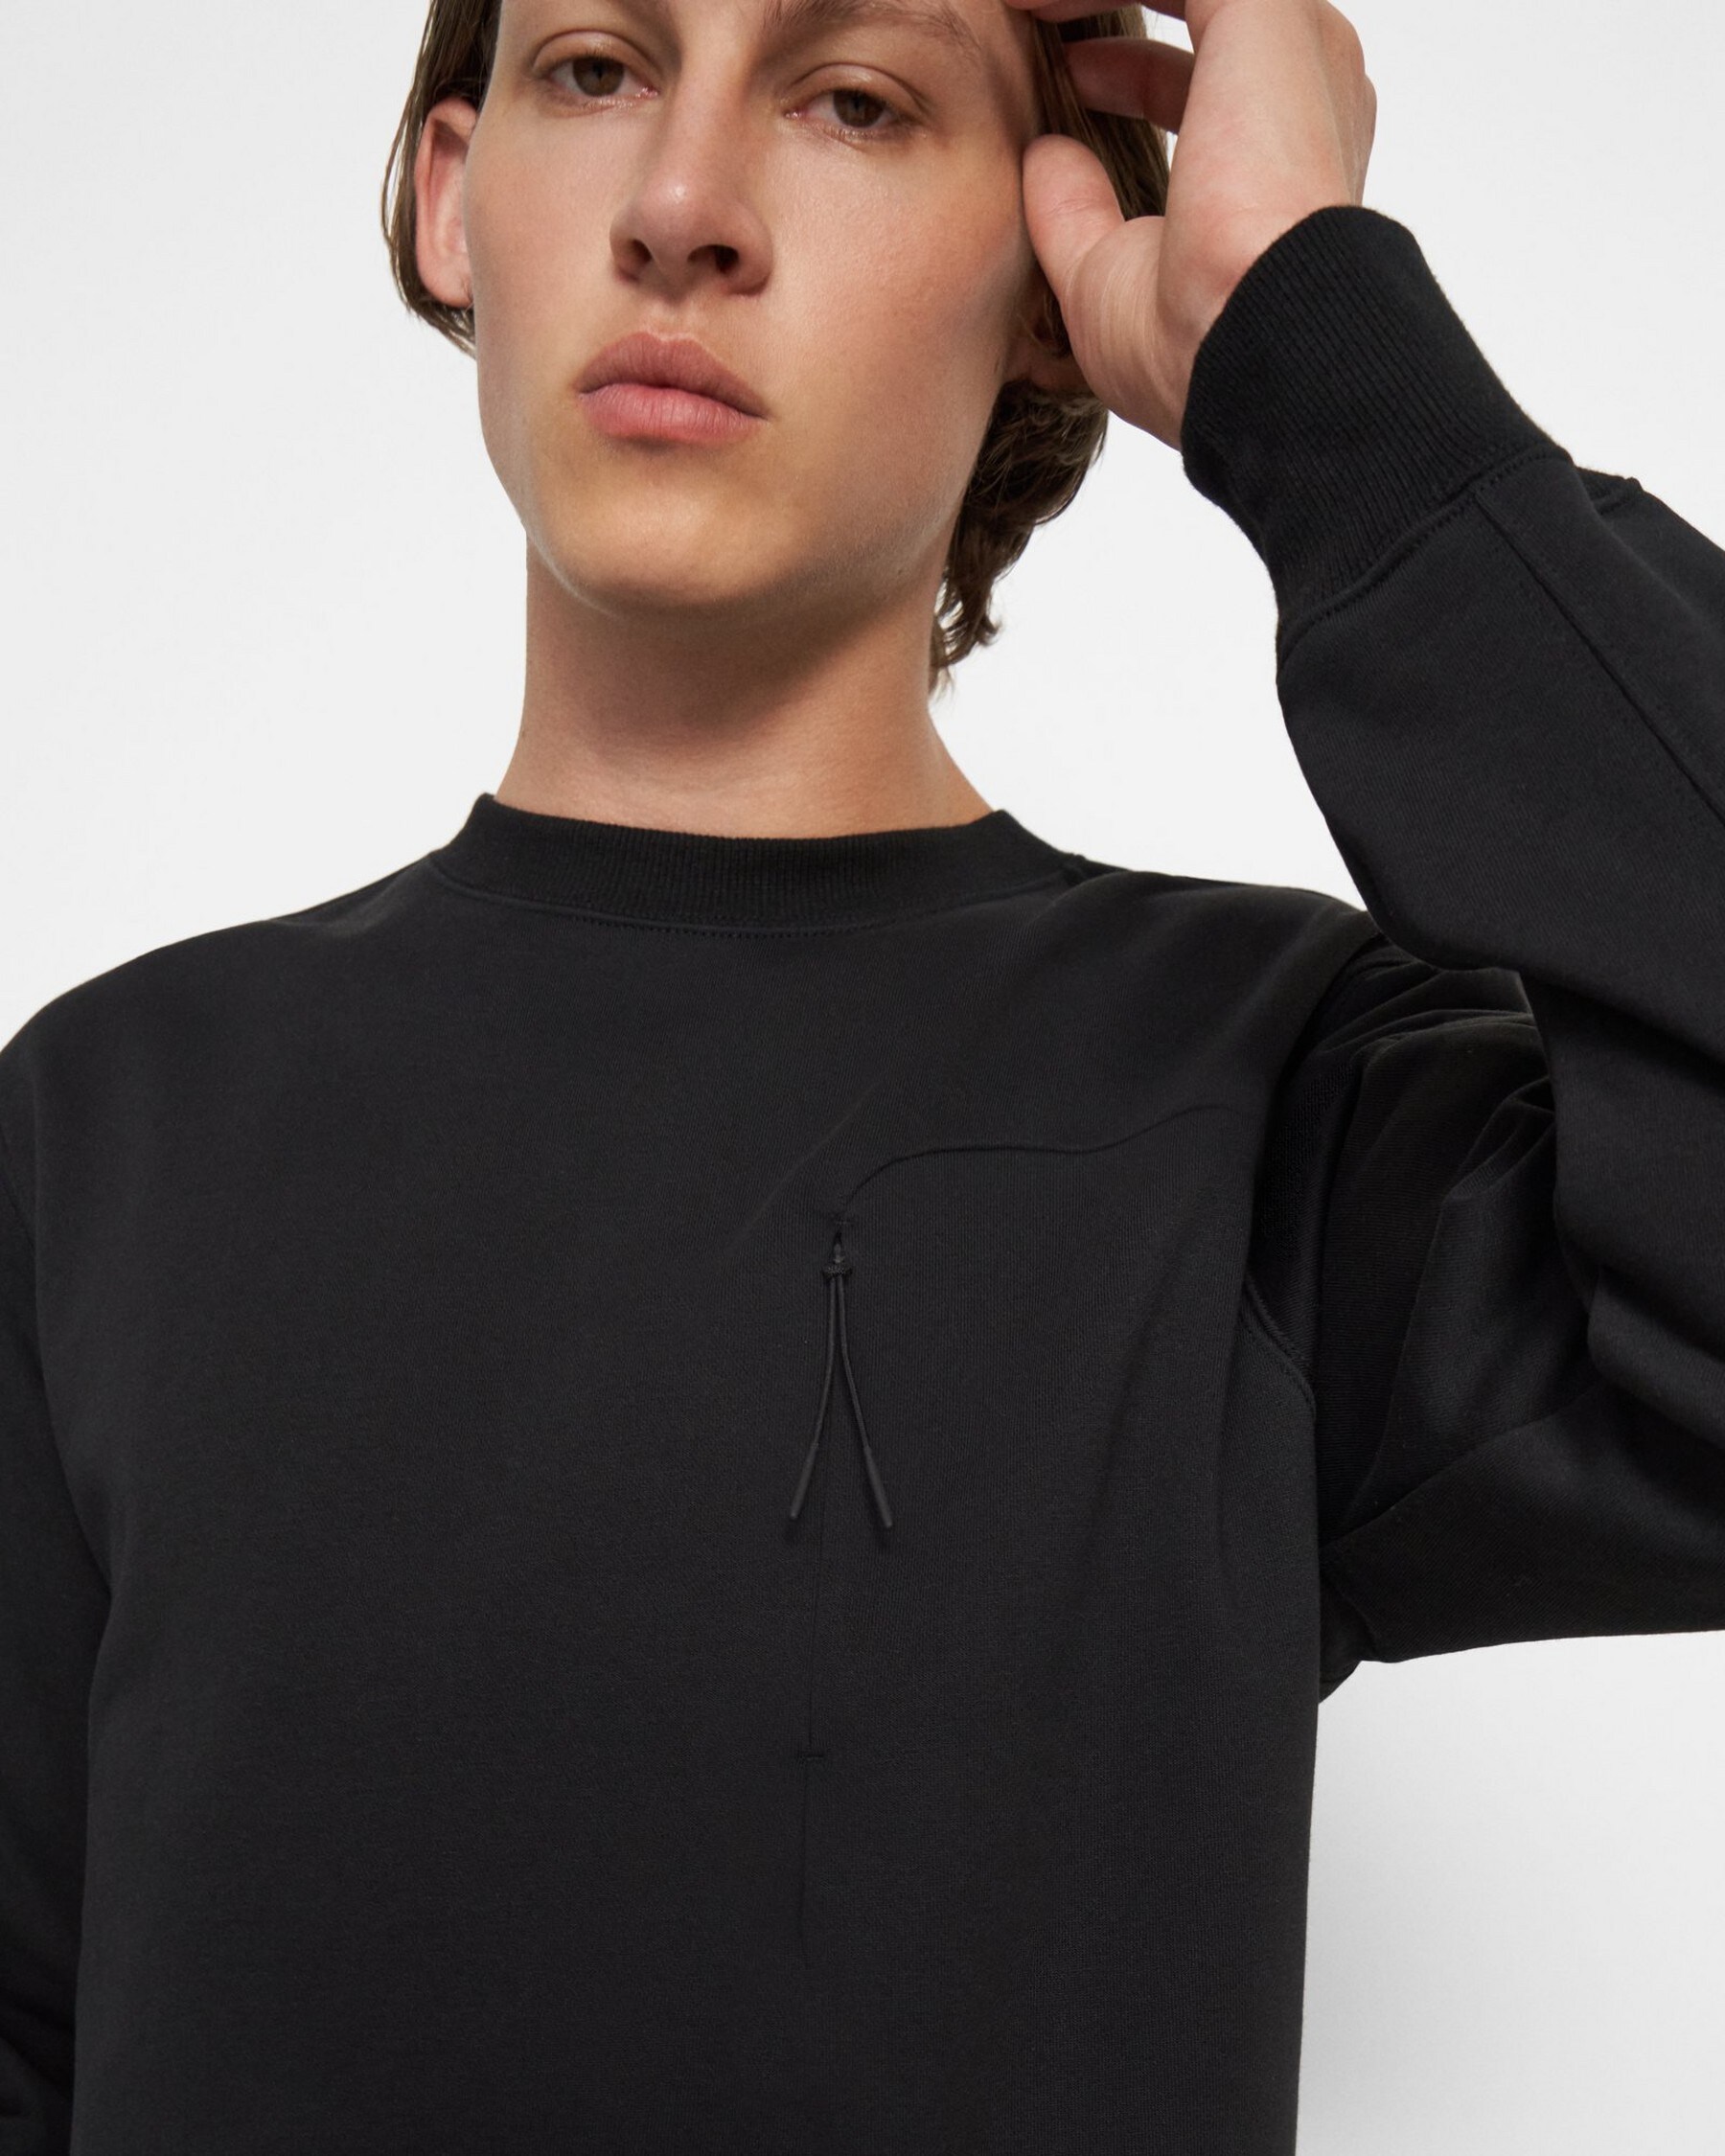 Zip-Pocket Sweatshirt in Tech Terry Cotton